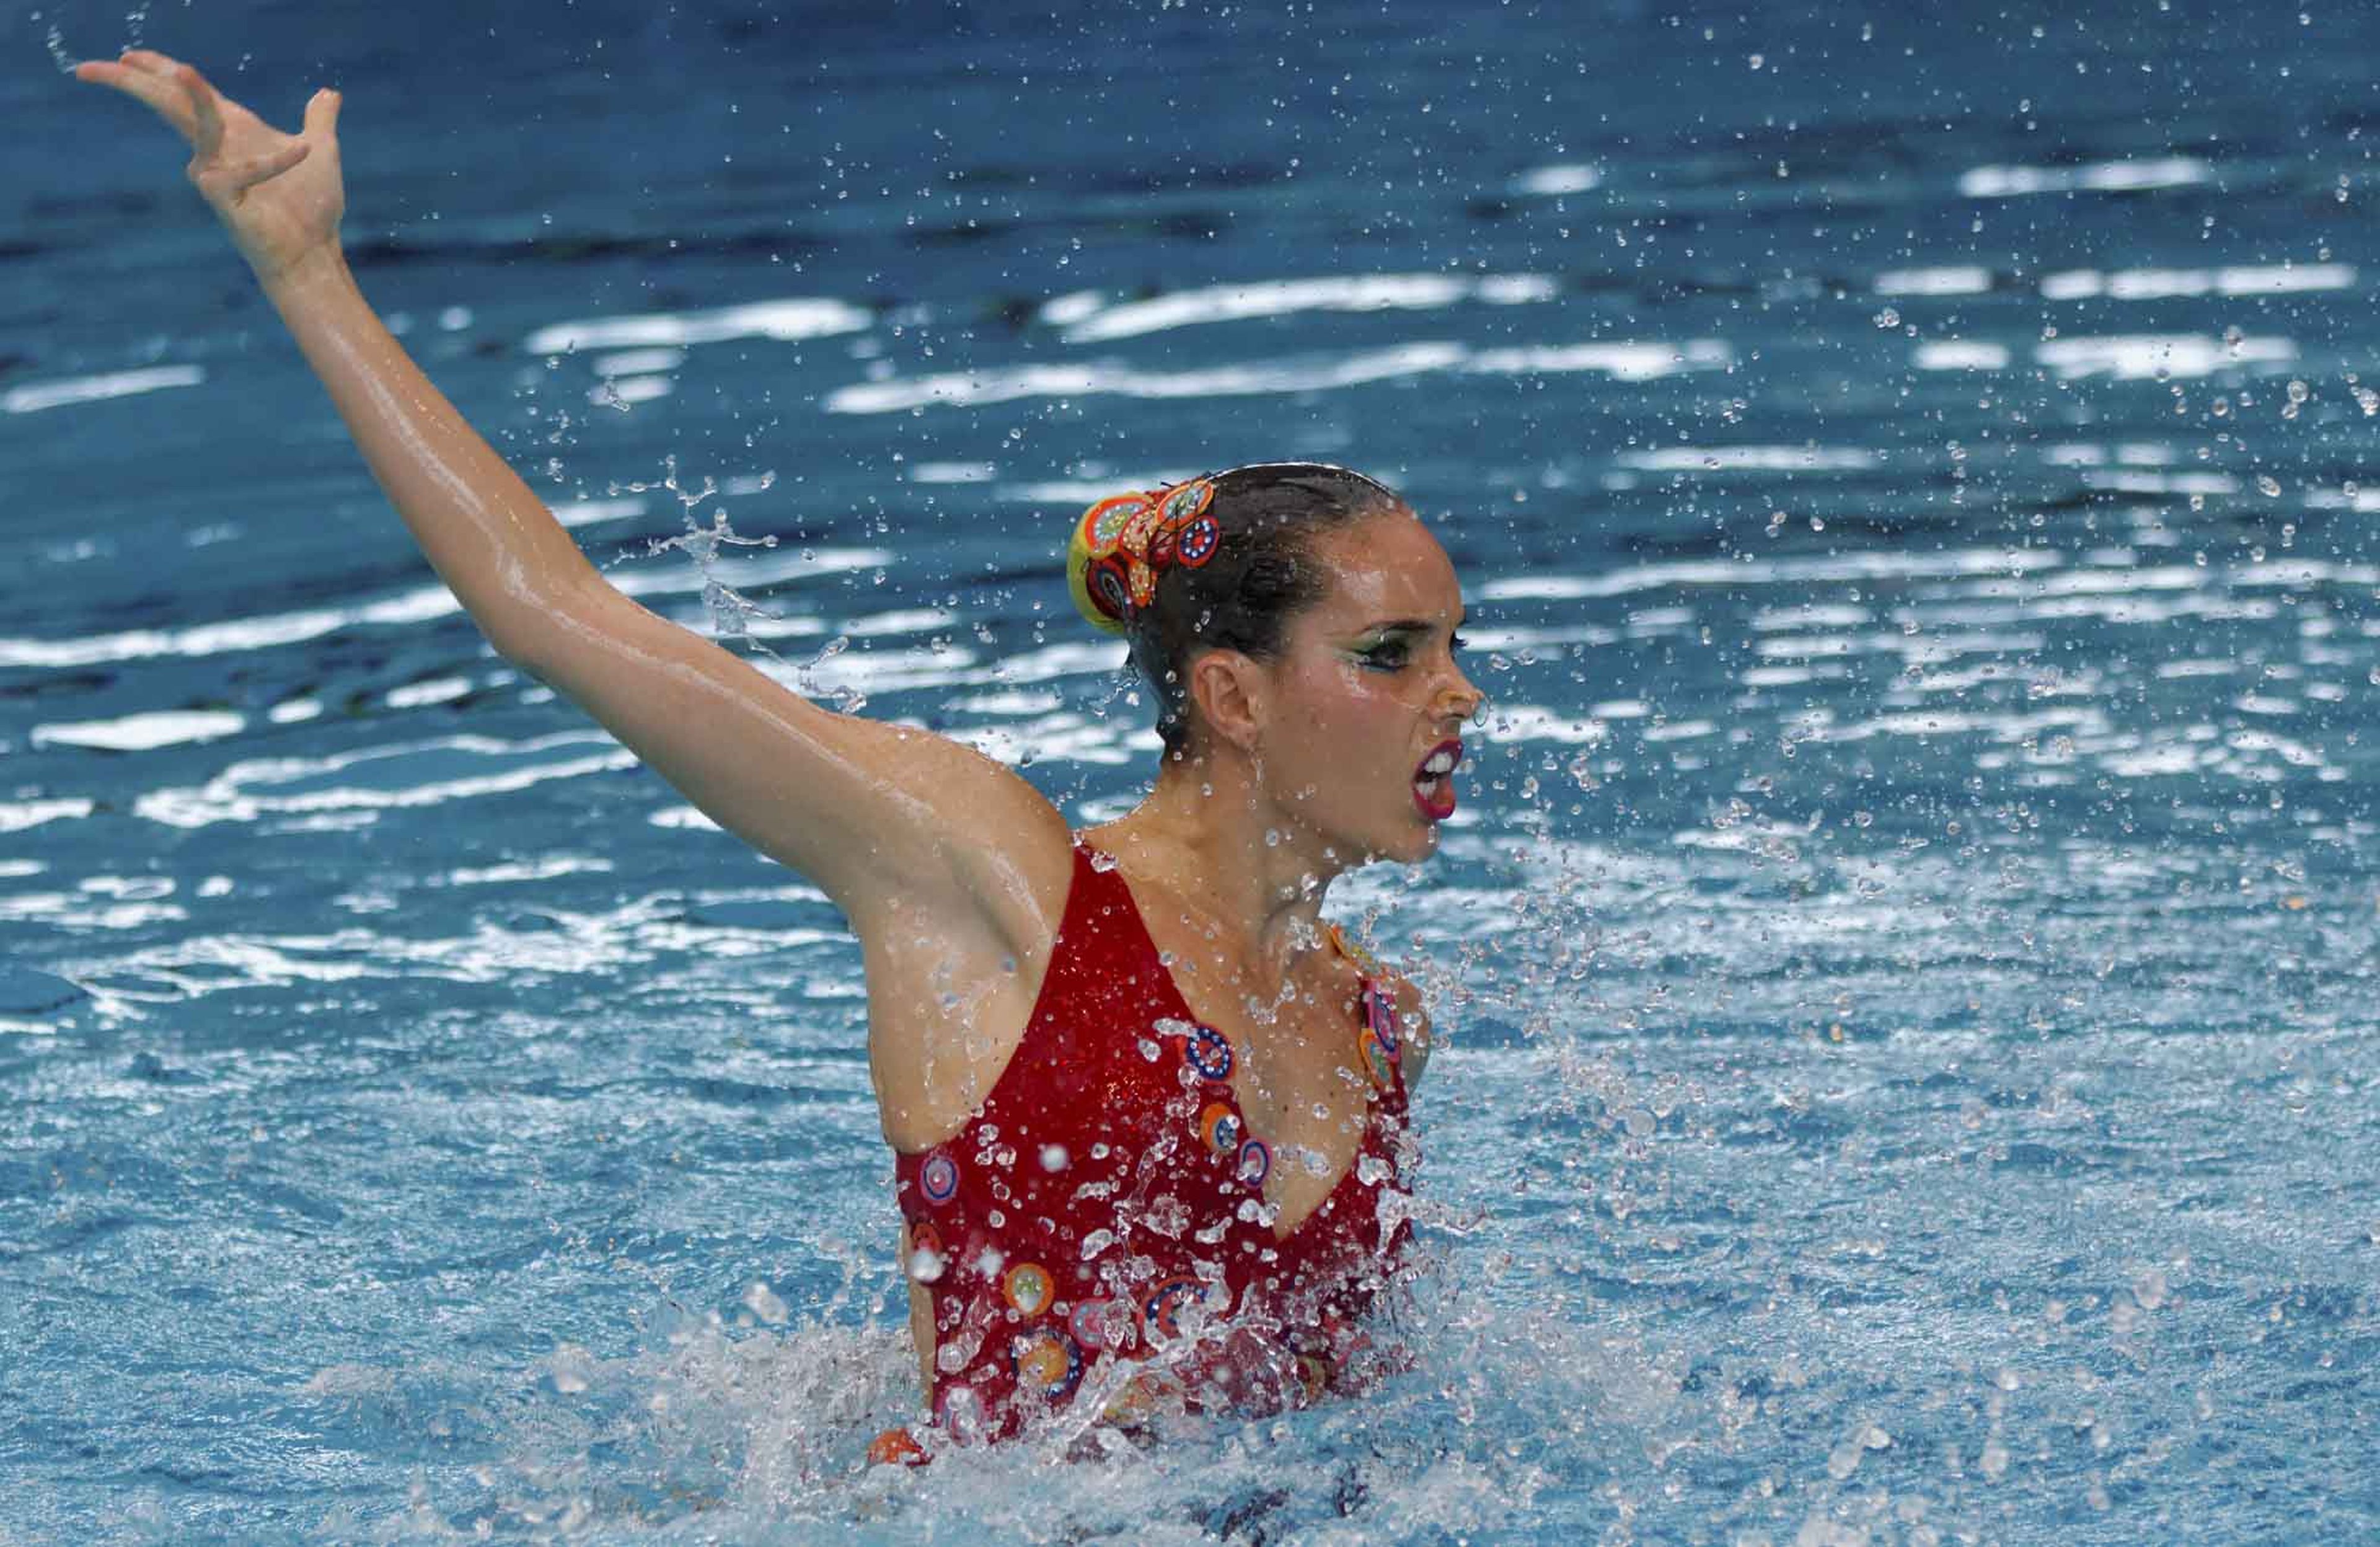 Ona Carbonell Ballestero es una nadadora española y capitana del equipo español de natación sincronizada.